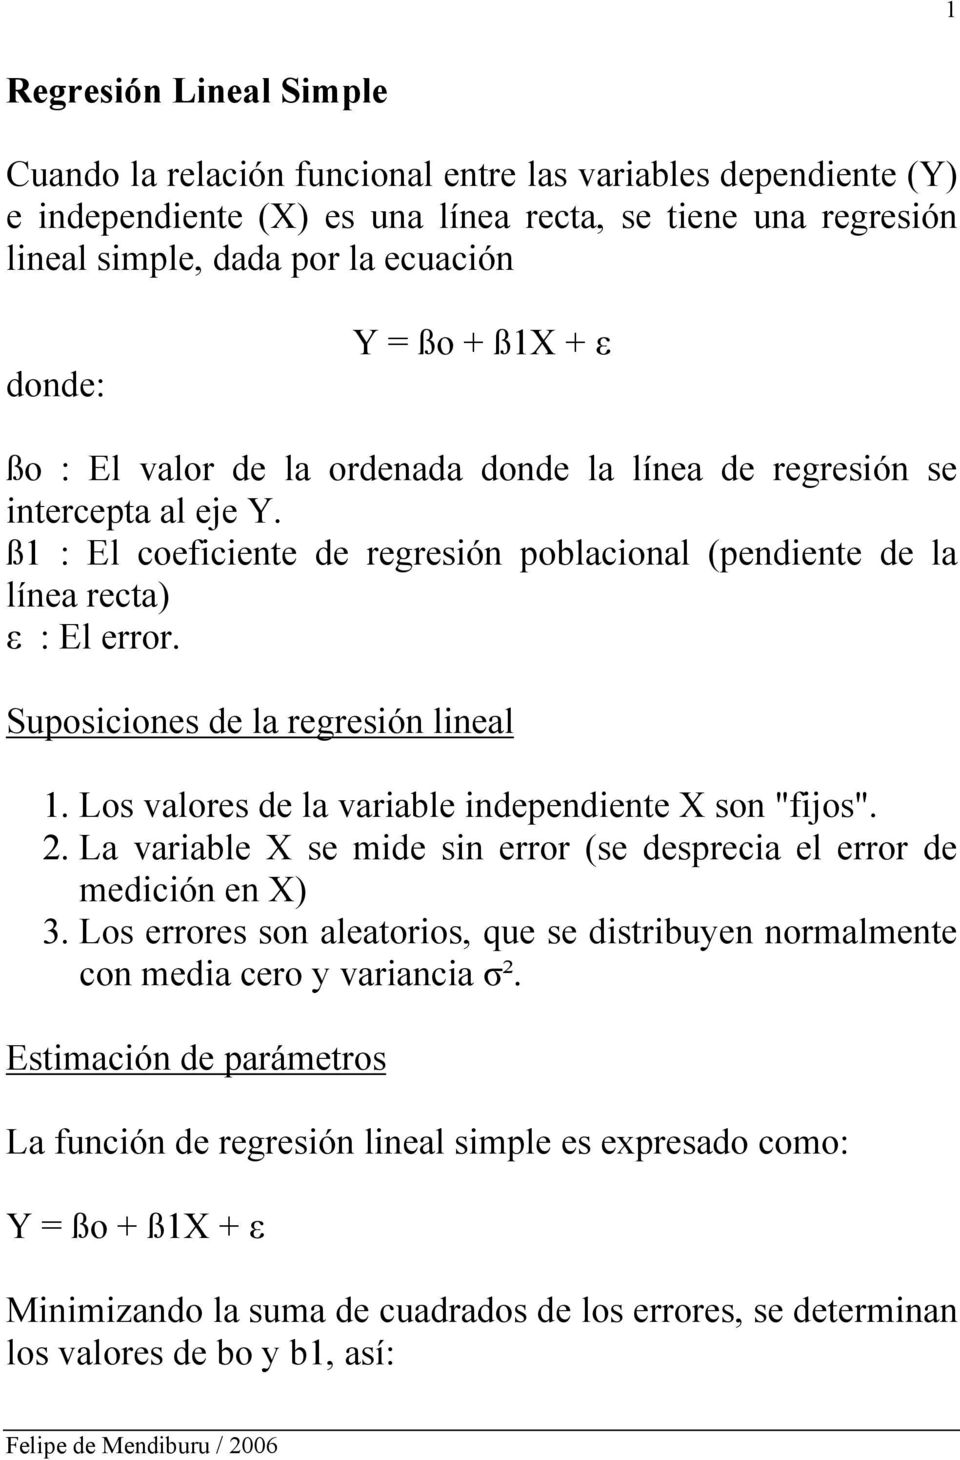 Suposiciones de la regresión lineal 1. Los valores de la variable independiente X son "fijos". 2. La variable X se mide sin error (se desprecia el error de medición en X) 3.